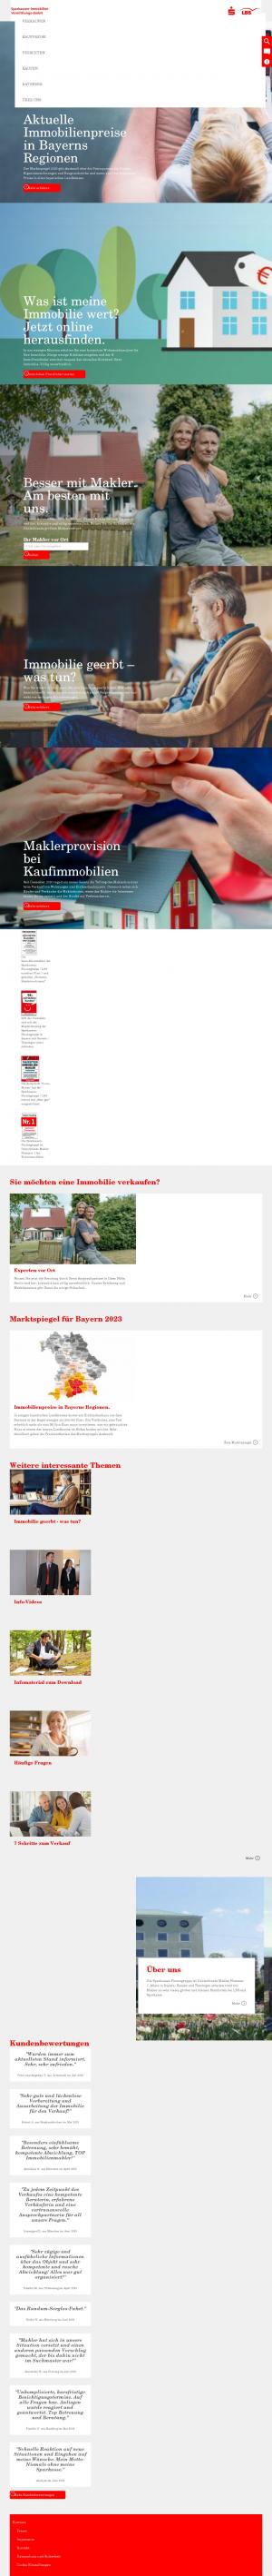 www.sparkassen-immo.de